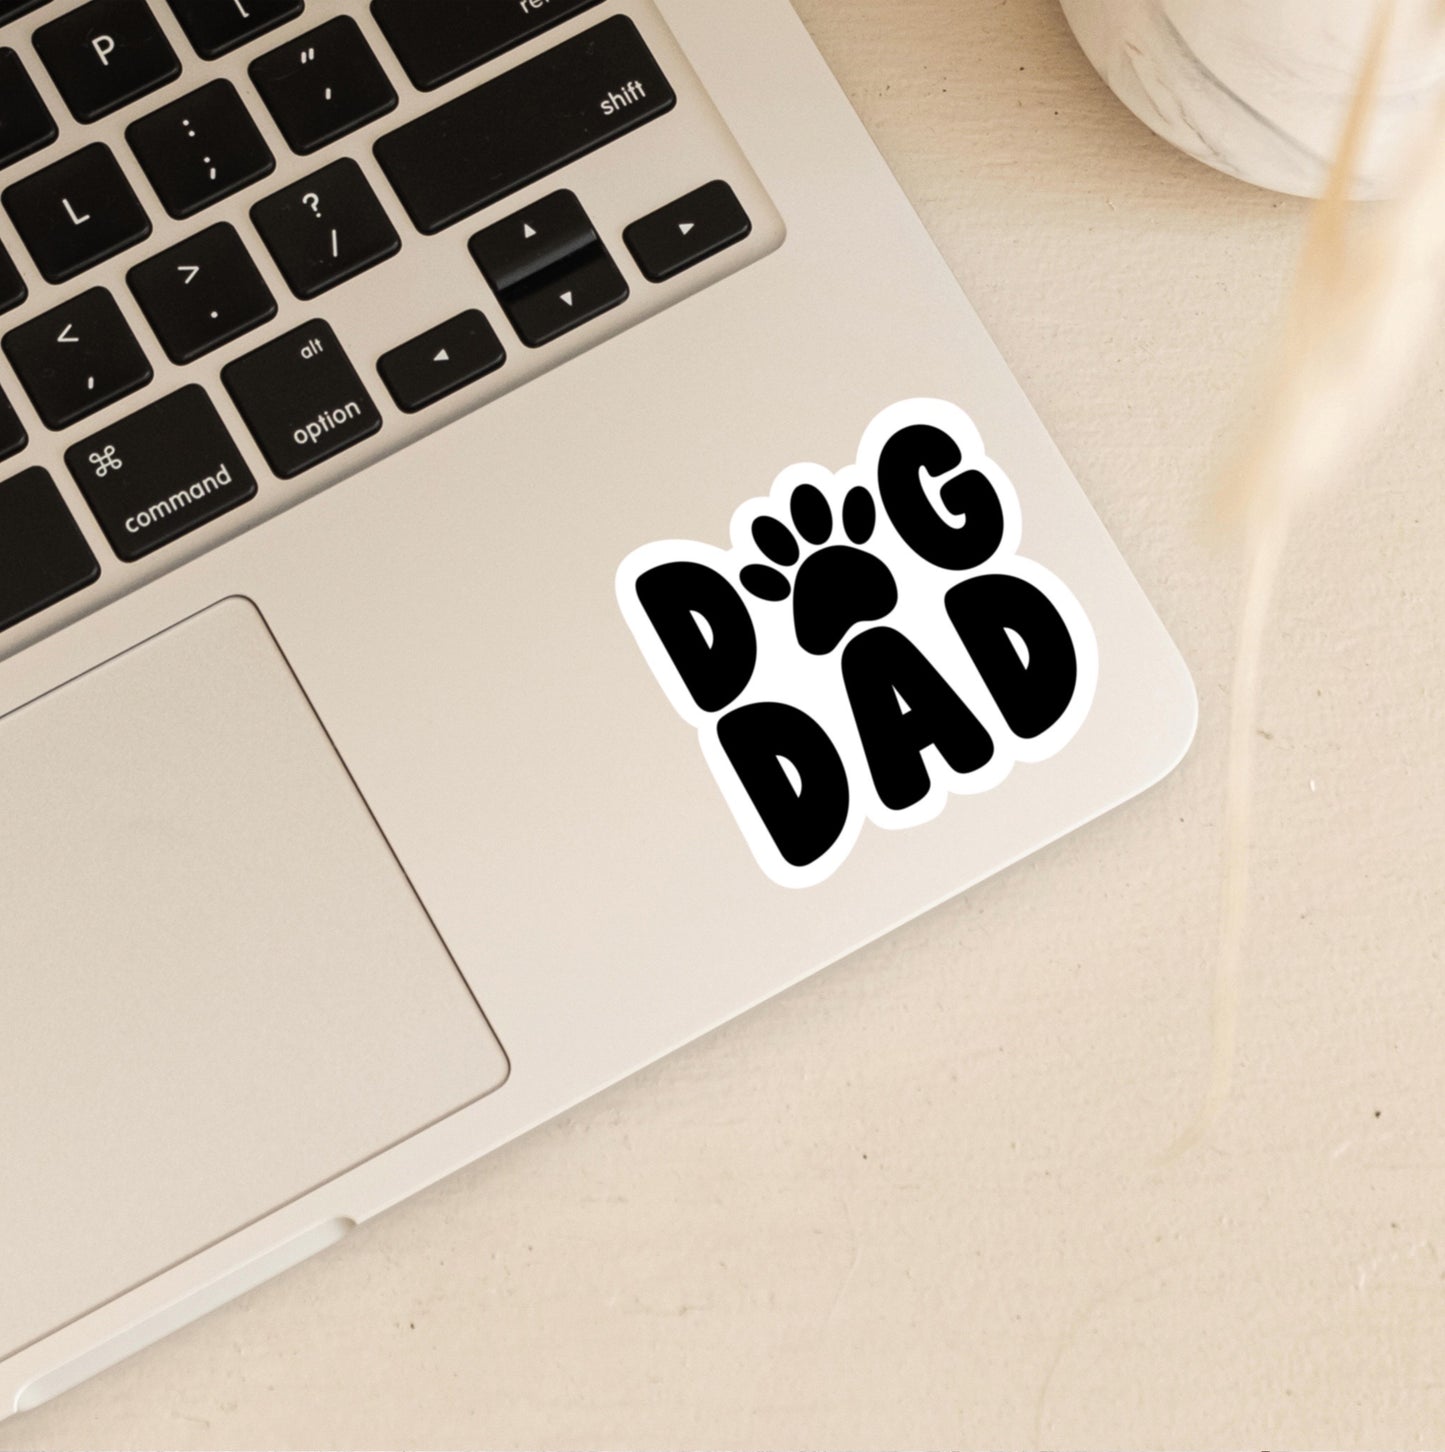 Dog Dad Sticker